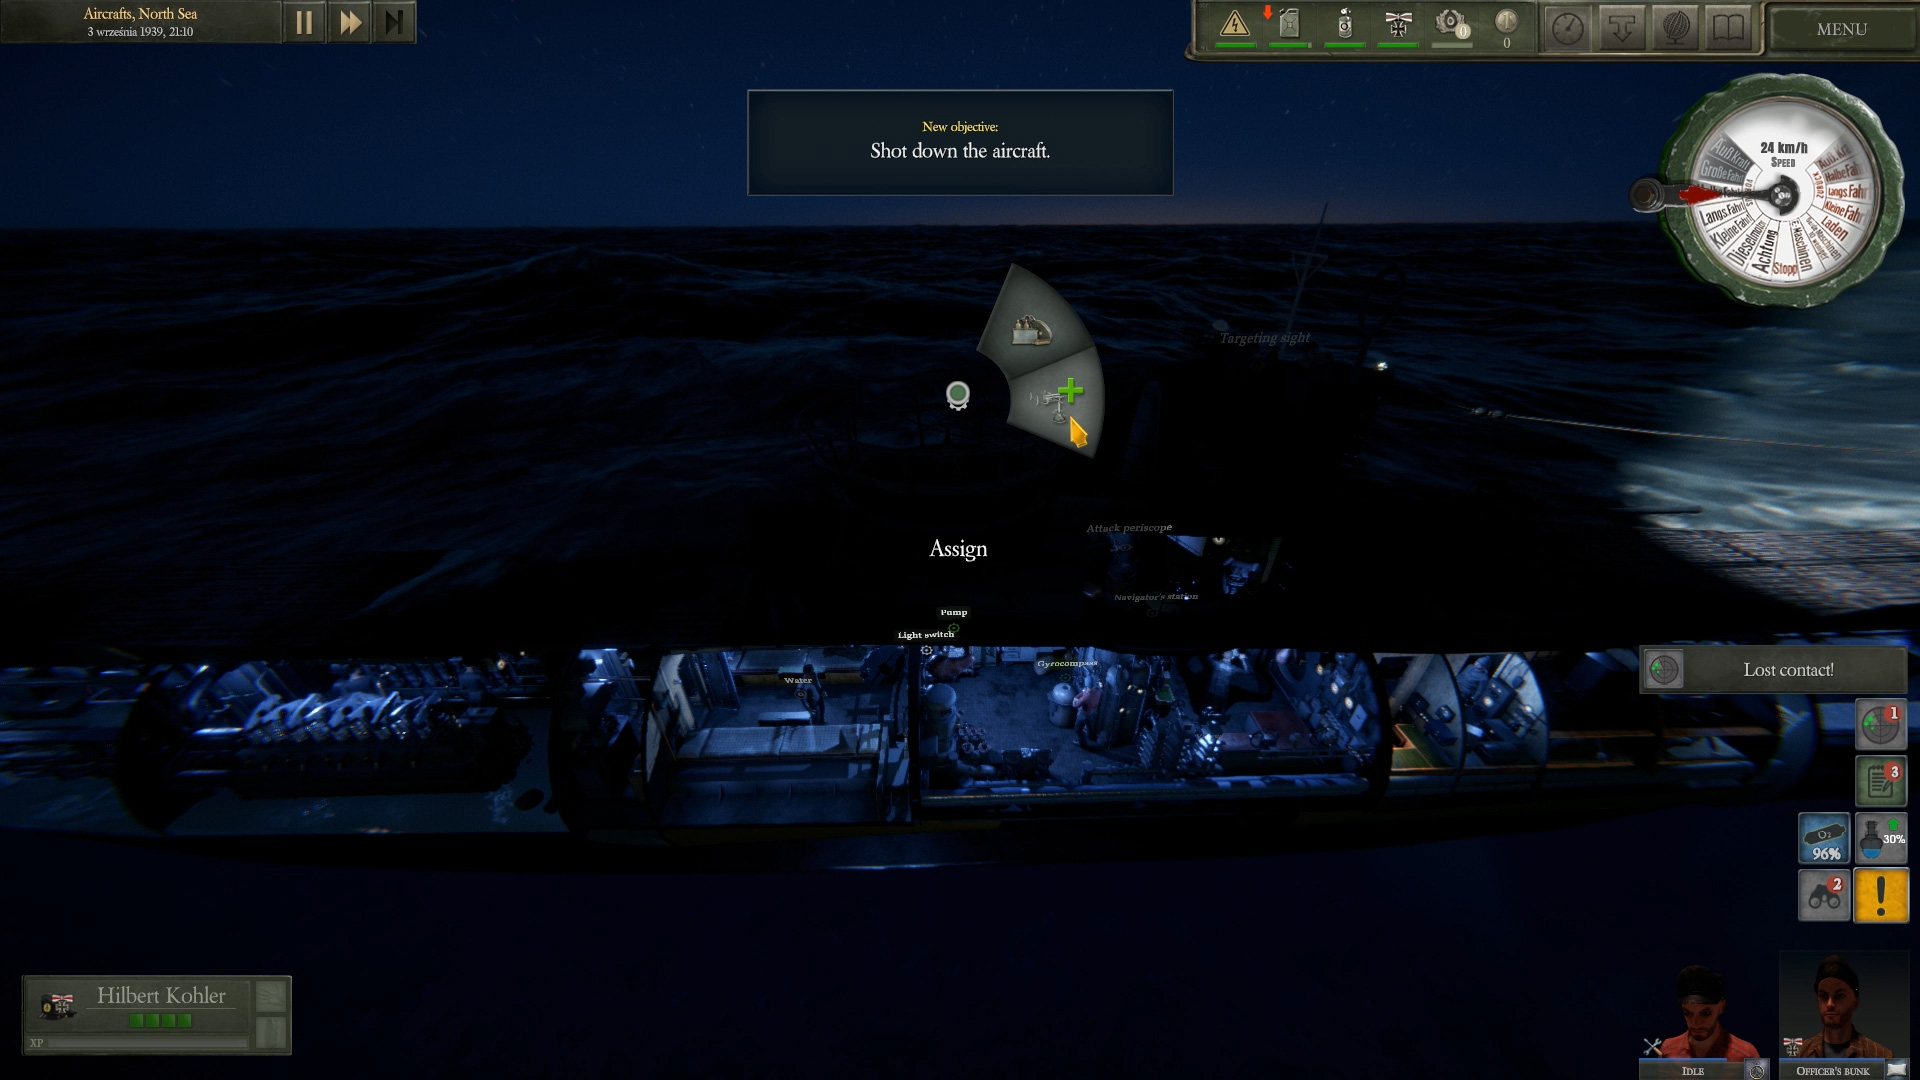 新潜艇模拟游戏《Uboat》公布 支持简体中文